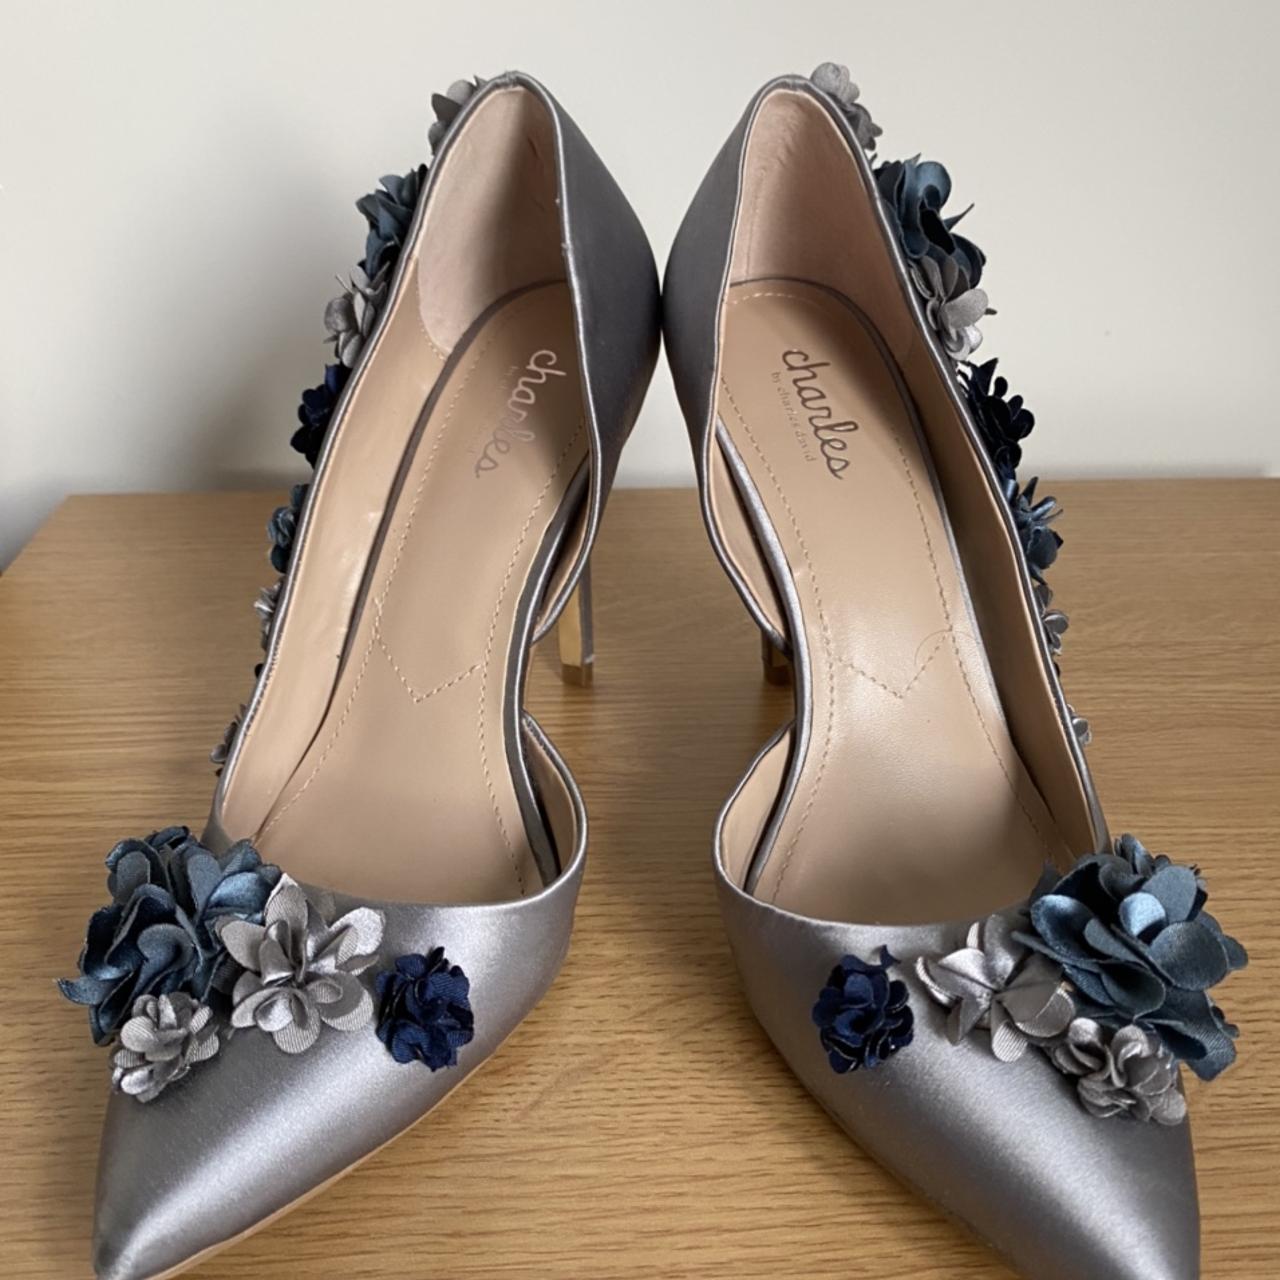 Metallic blue heels with floral detail - Depop